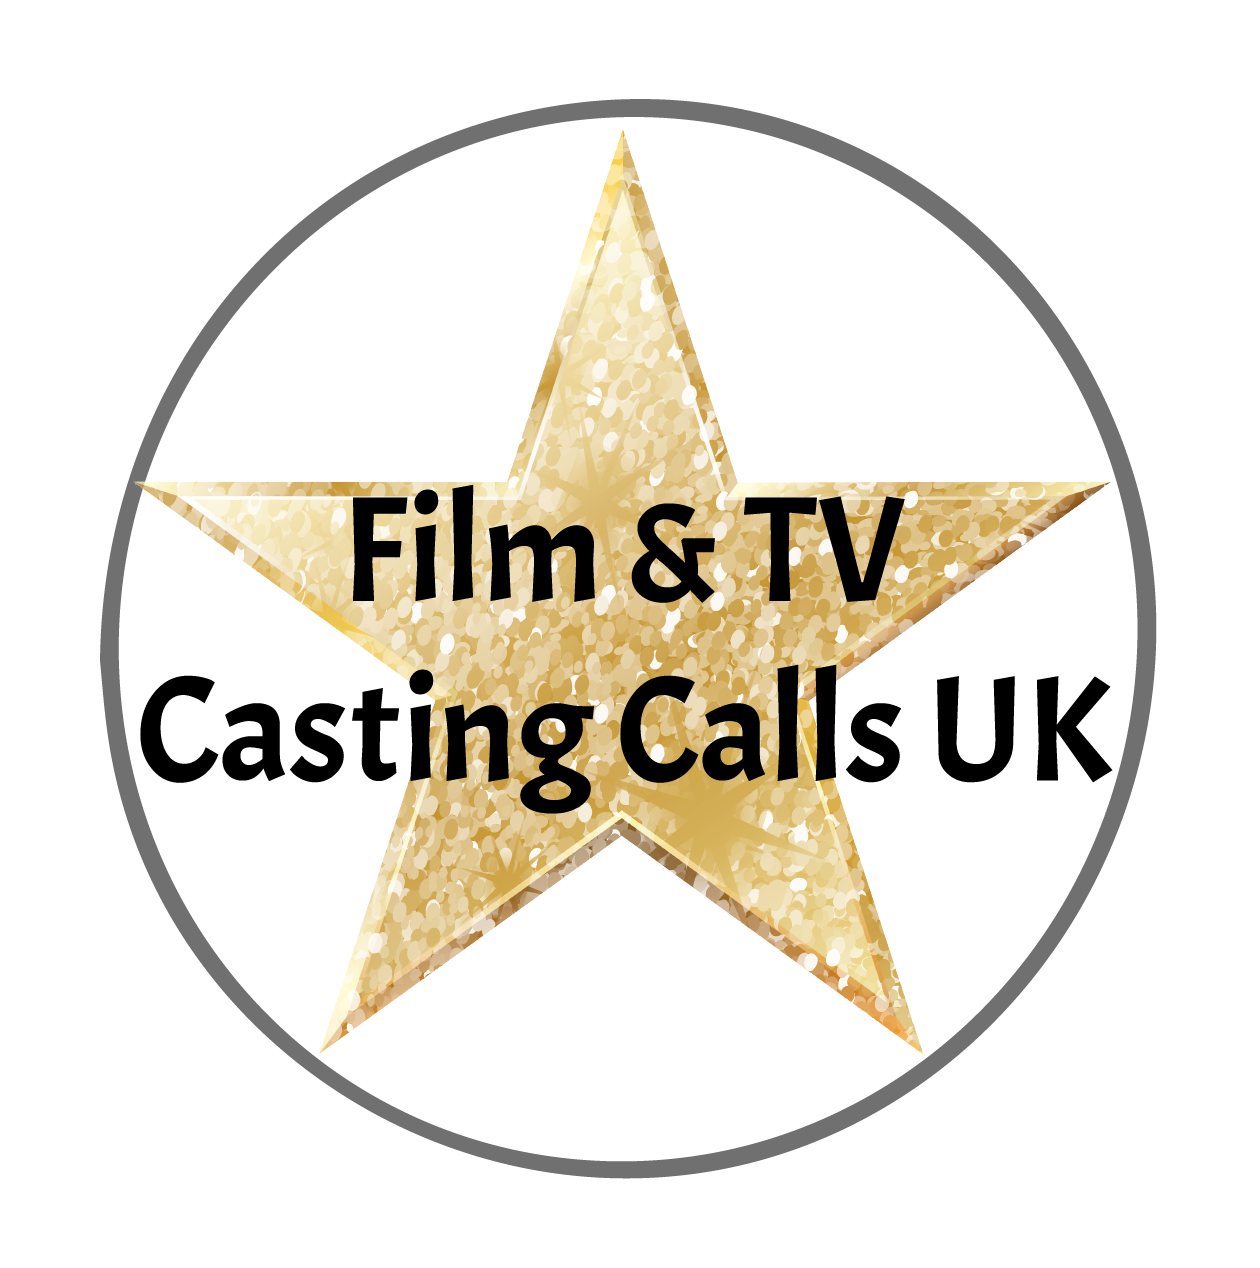 Film & TV Casting Calls UK